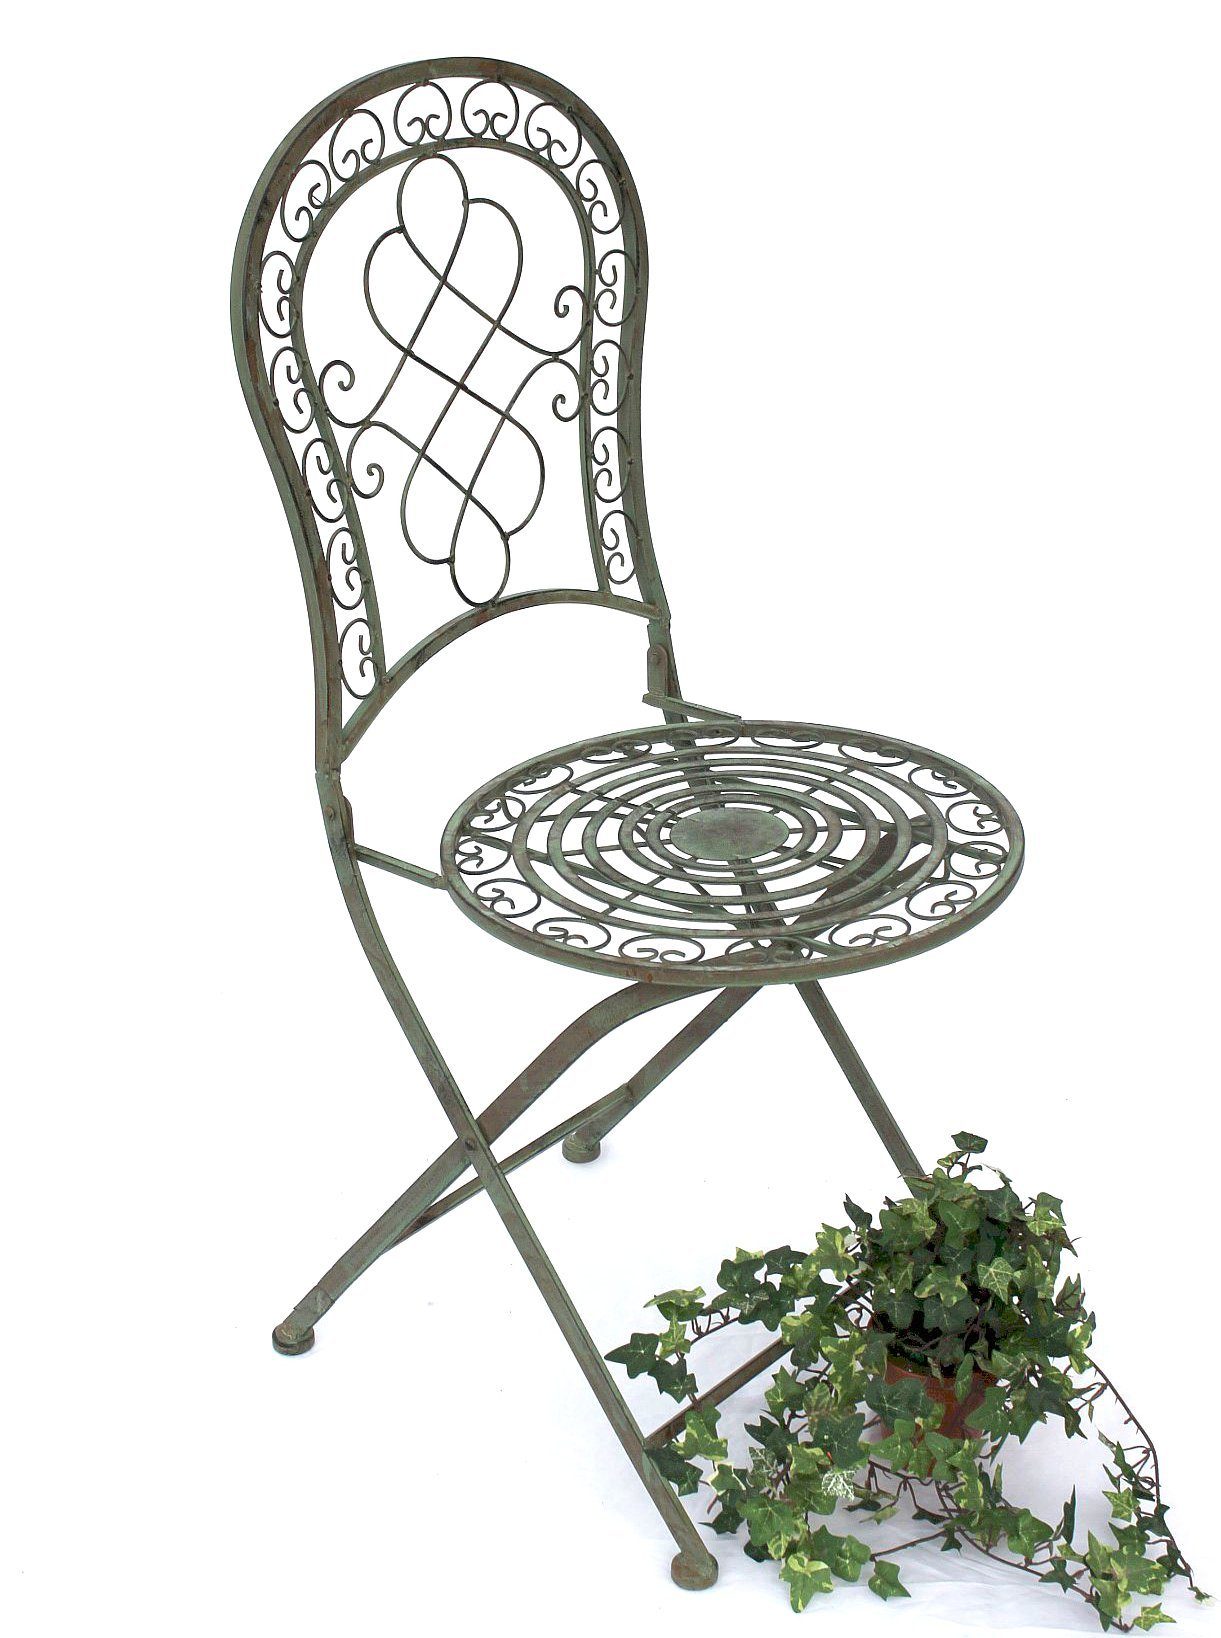 DanDiBo Malega klappbar Sitzgruppe Gartentisch Bistroset Bistrotisch Metall Eisen mit 2 Garten Antik Stühlen